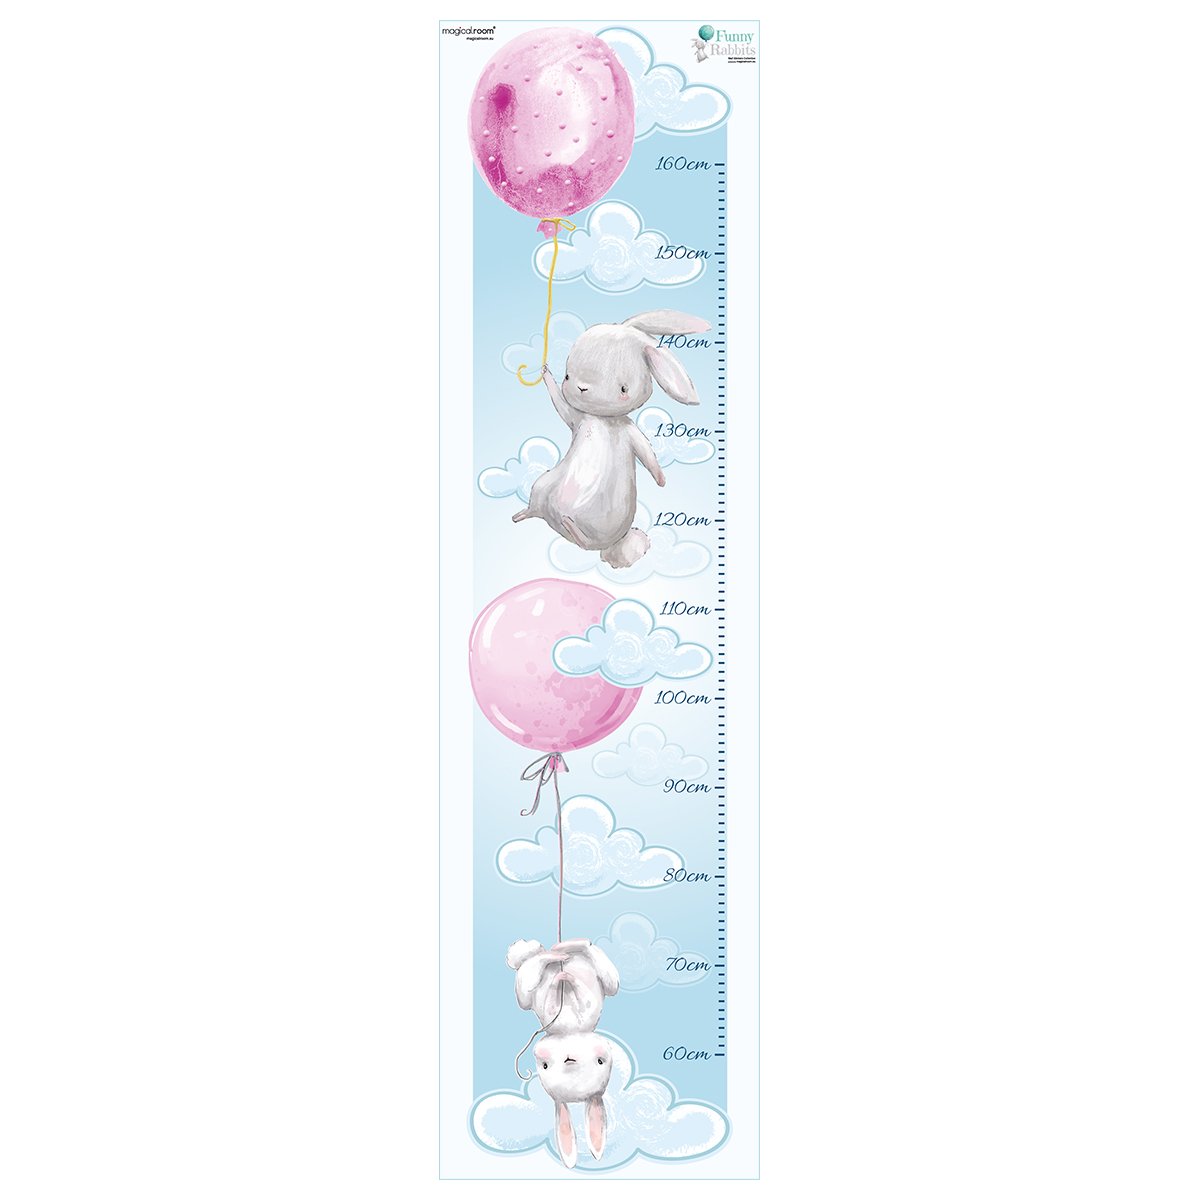 Naklejka na ścianę miarka wzrostu - króliki i baloniki#kolor_rozowy